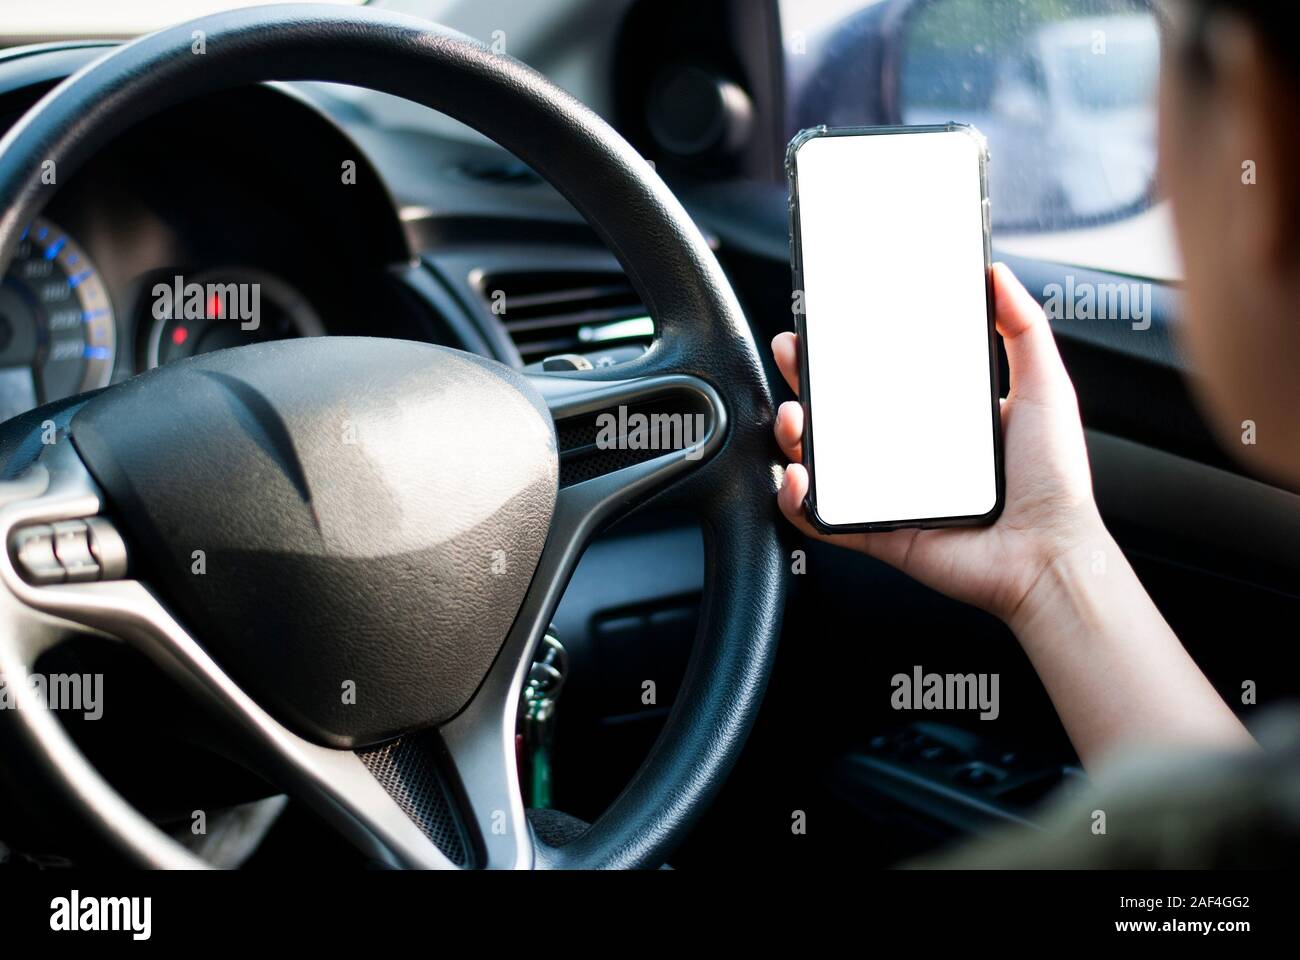 Mano sujetando el smartphone se utiliza nuevo modelo, para buscar direcciones, en los últimos modelos de coches.Concepto de utilizar un coche por teléfono. Foto de stock